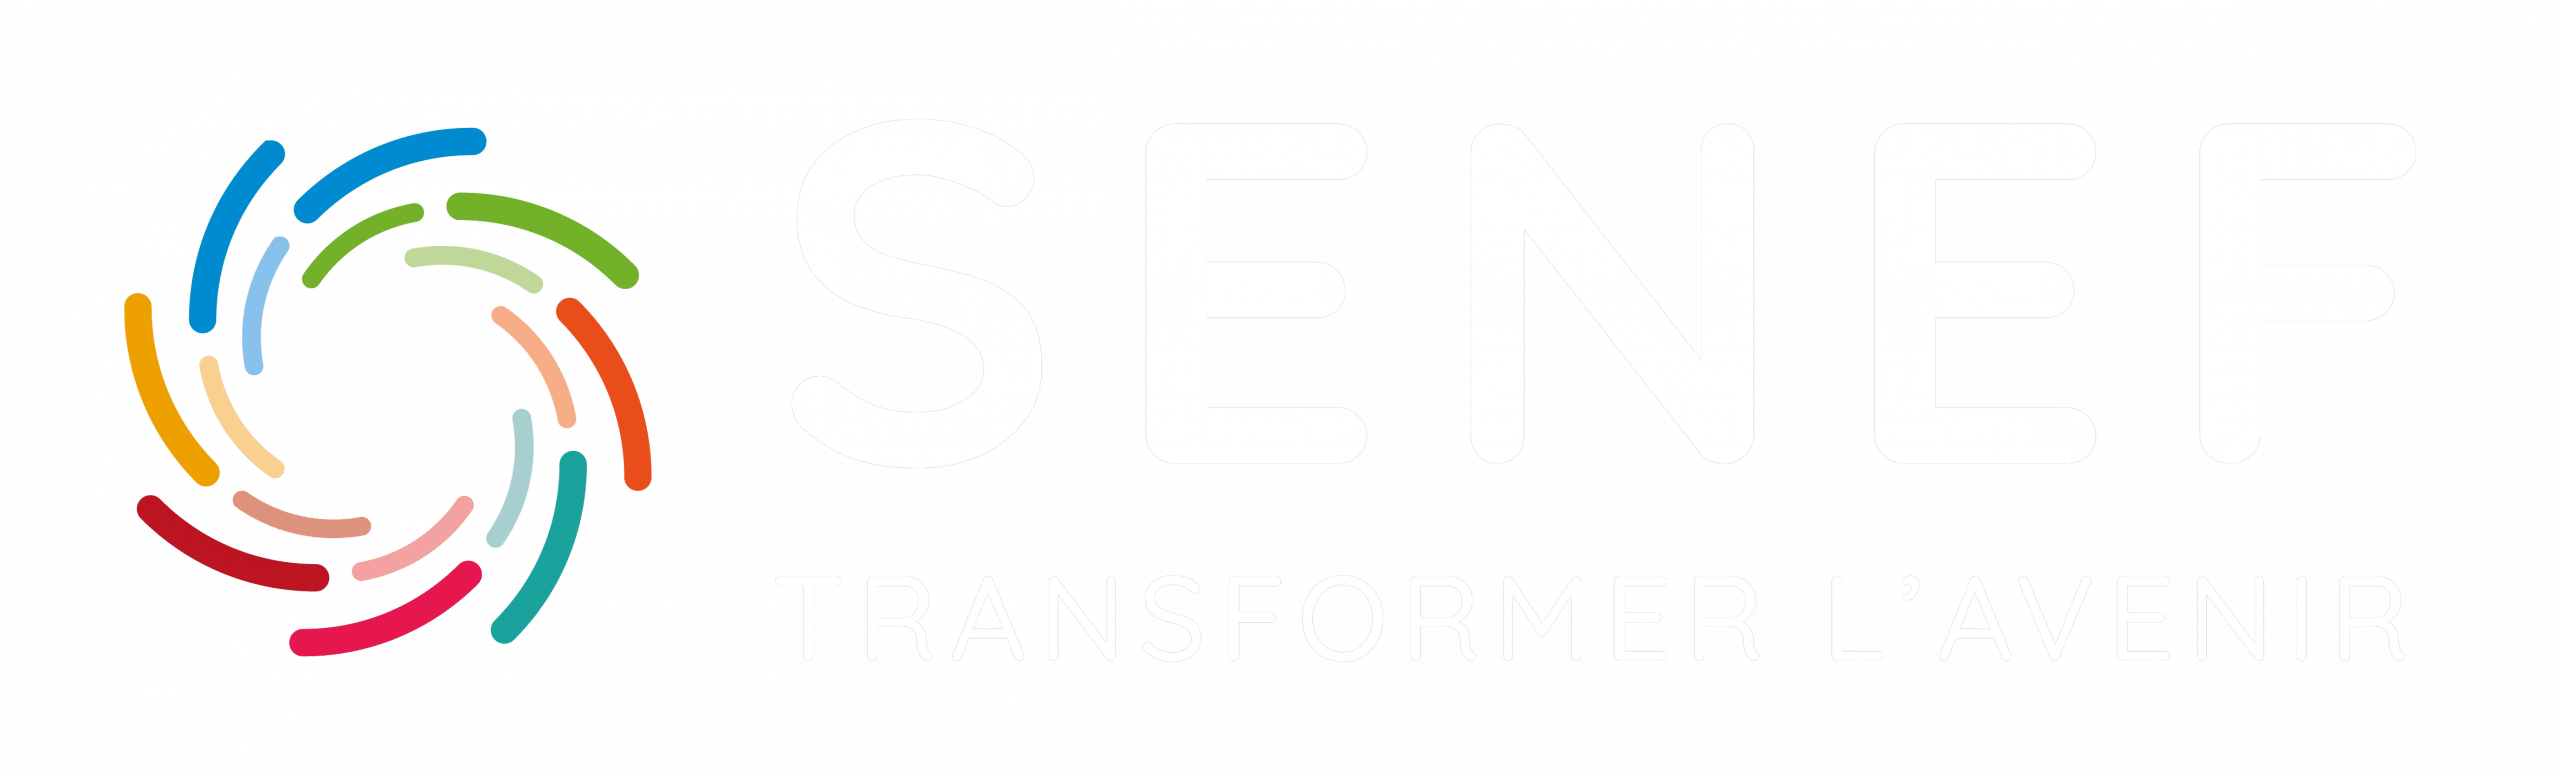 Groupe Senef, éditeur du logiciel Services à la personne Progisap